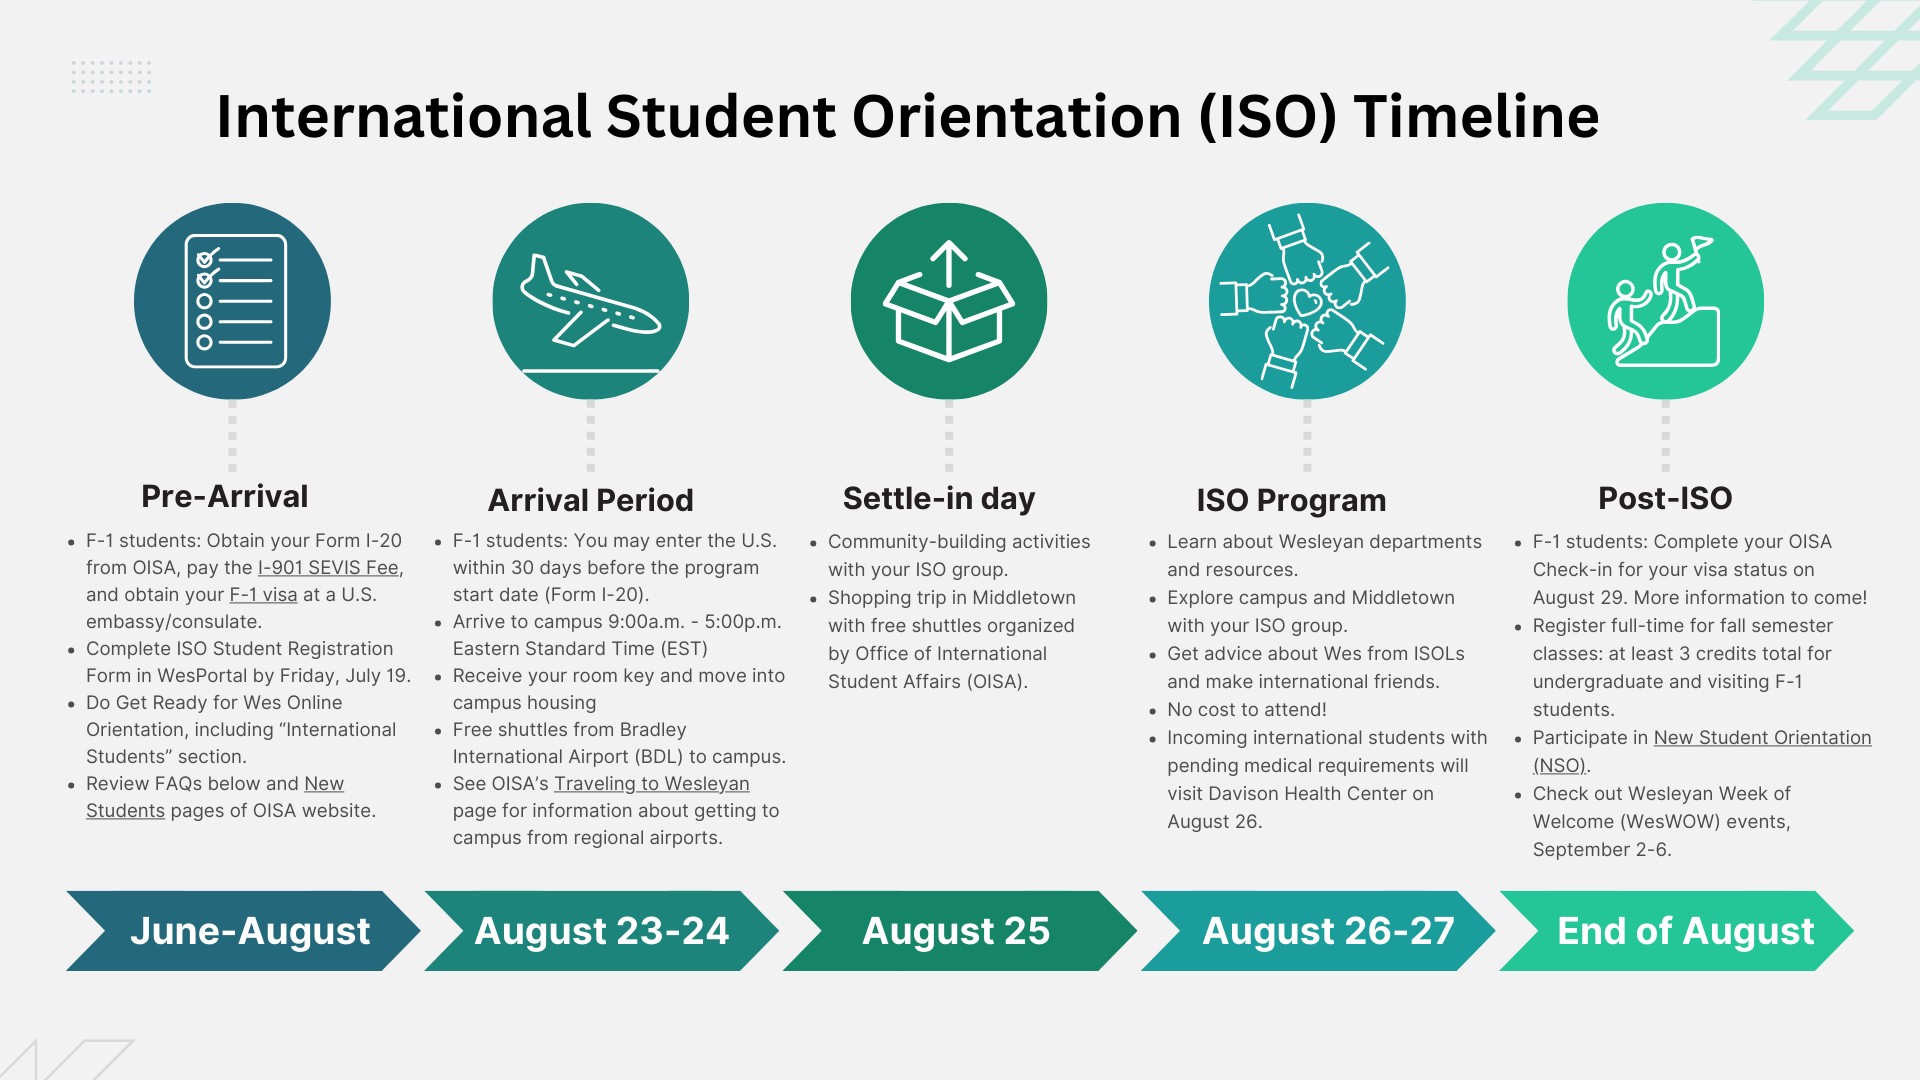 International Student Orientation Timeline.png